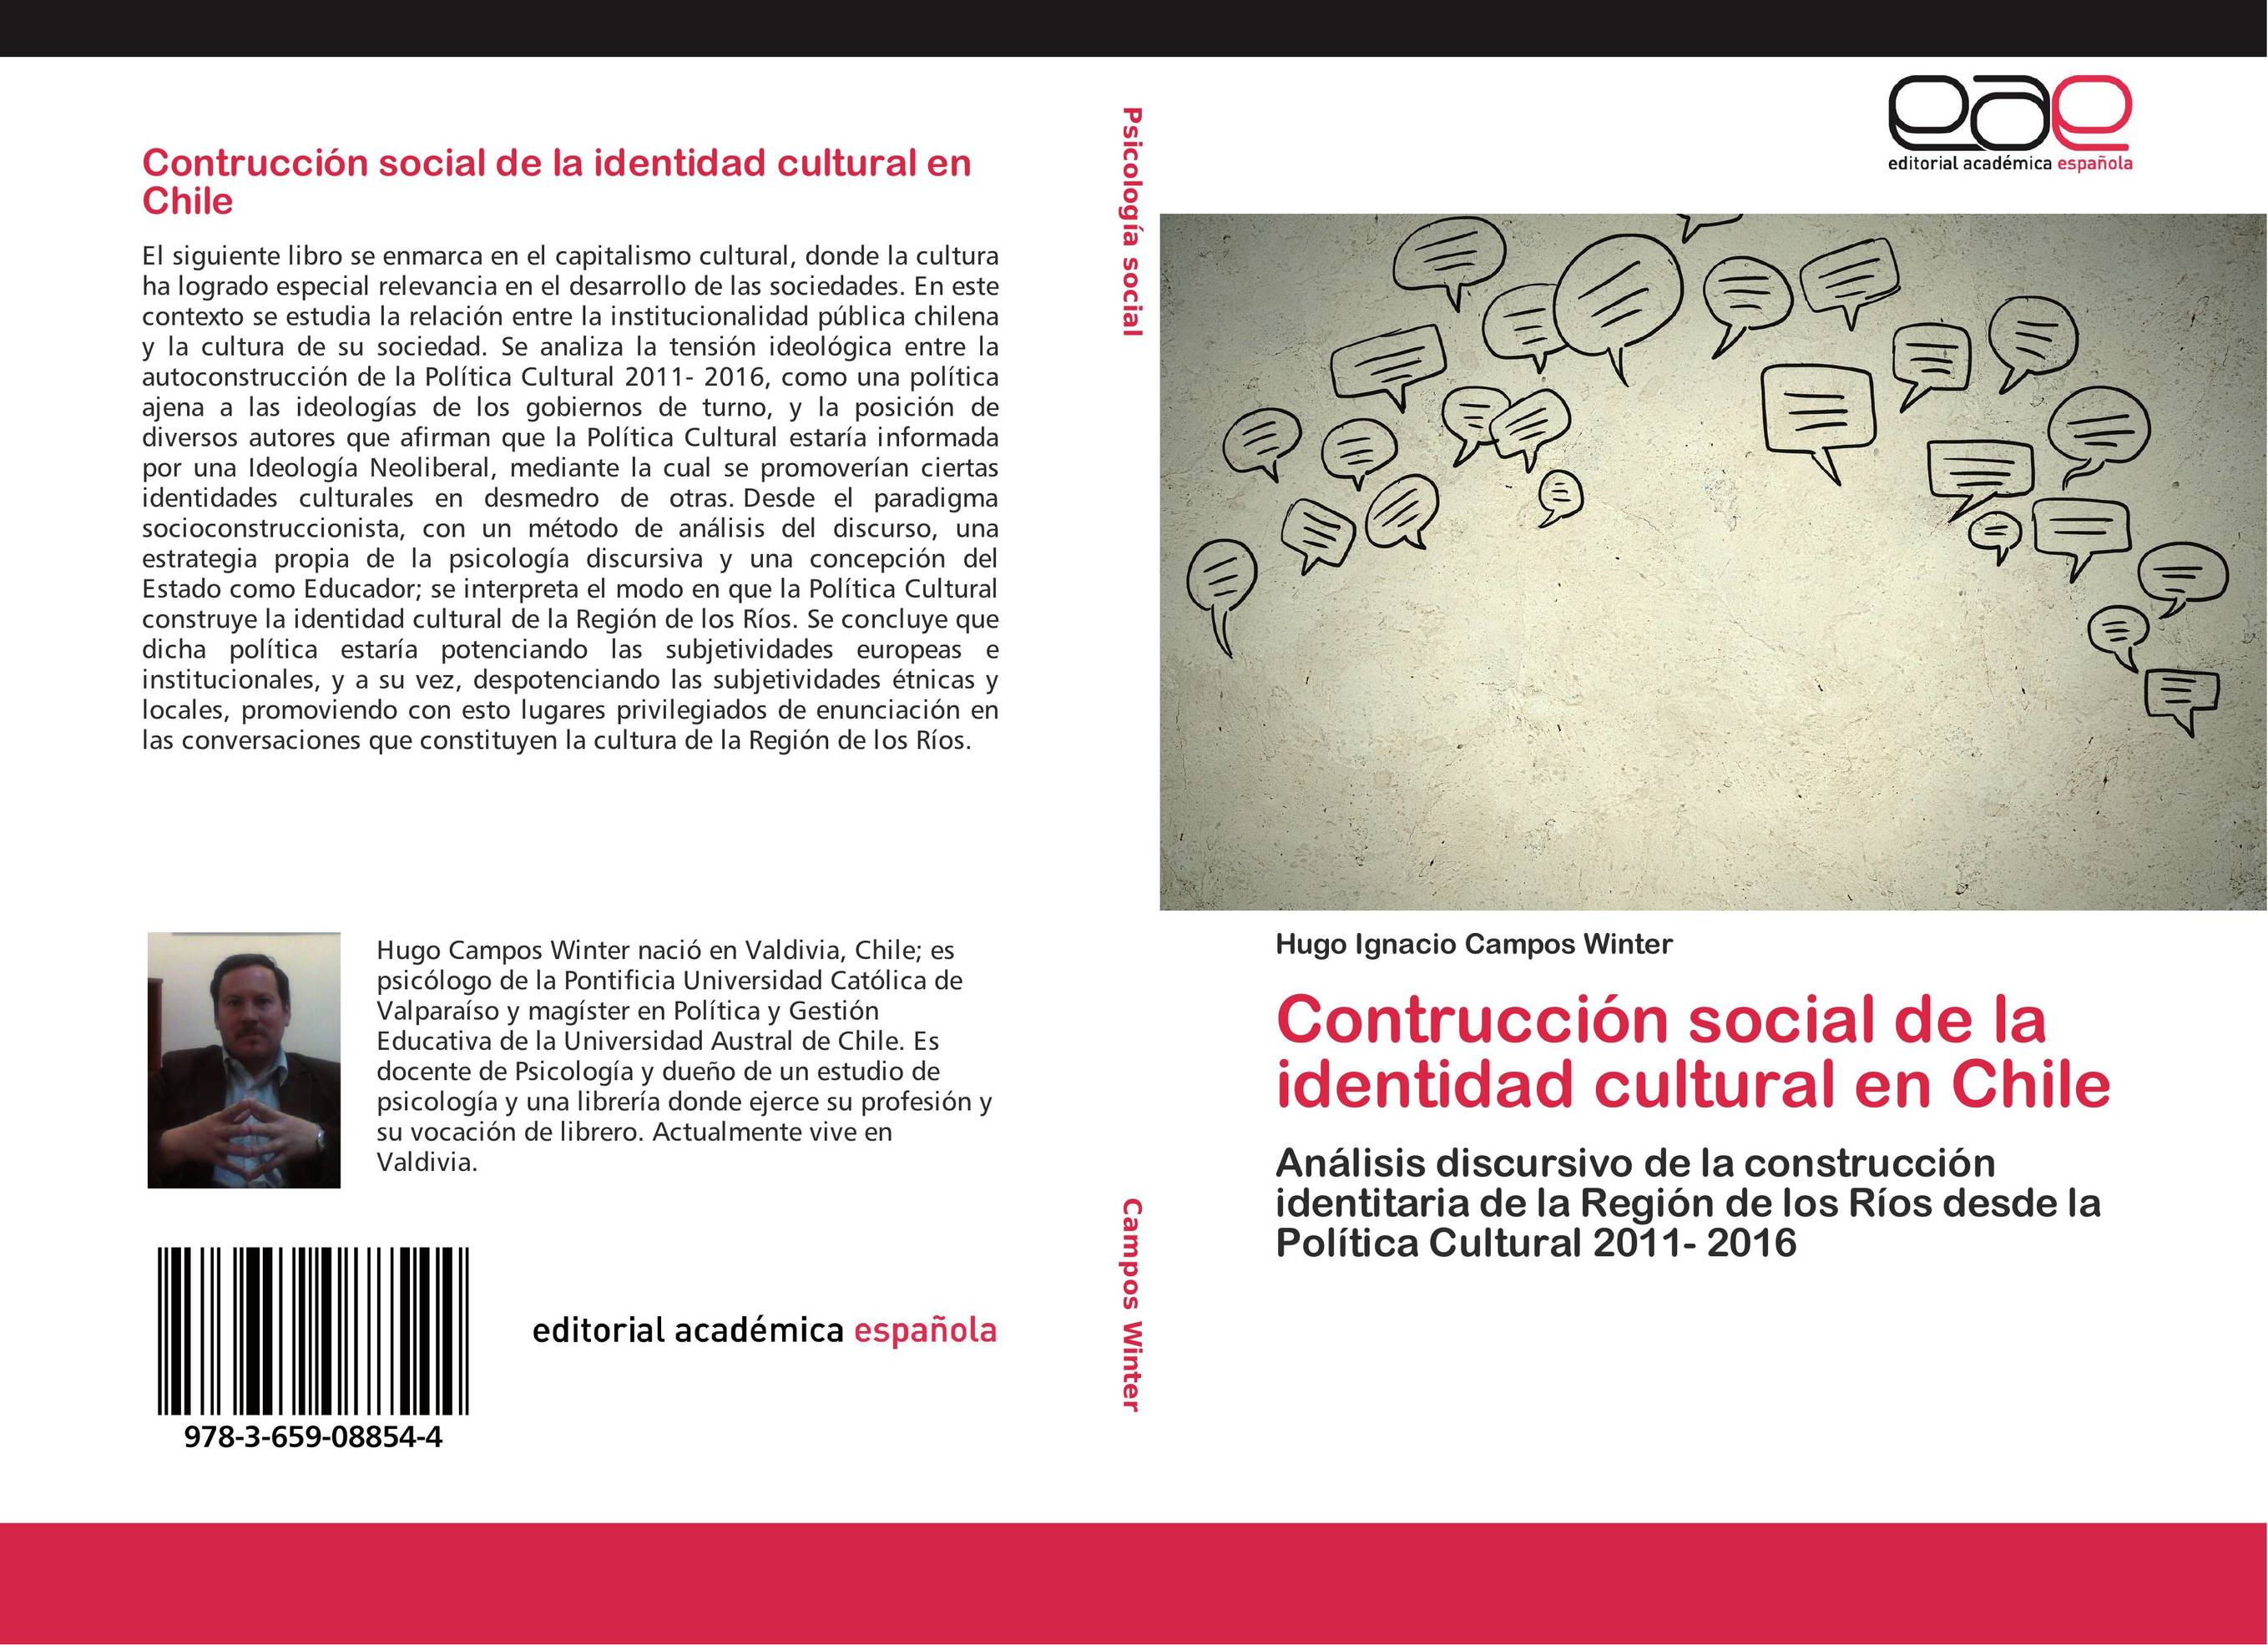 Contrucción social de la identidad cultural en Chile